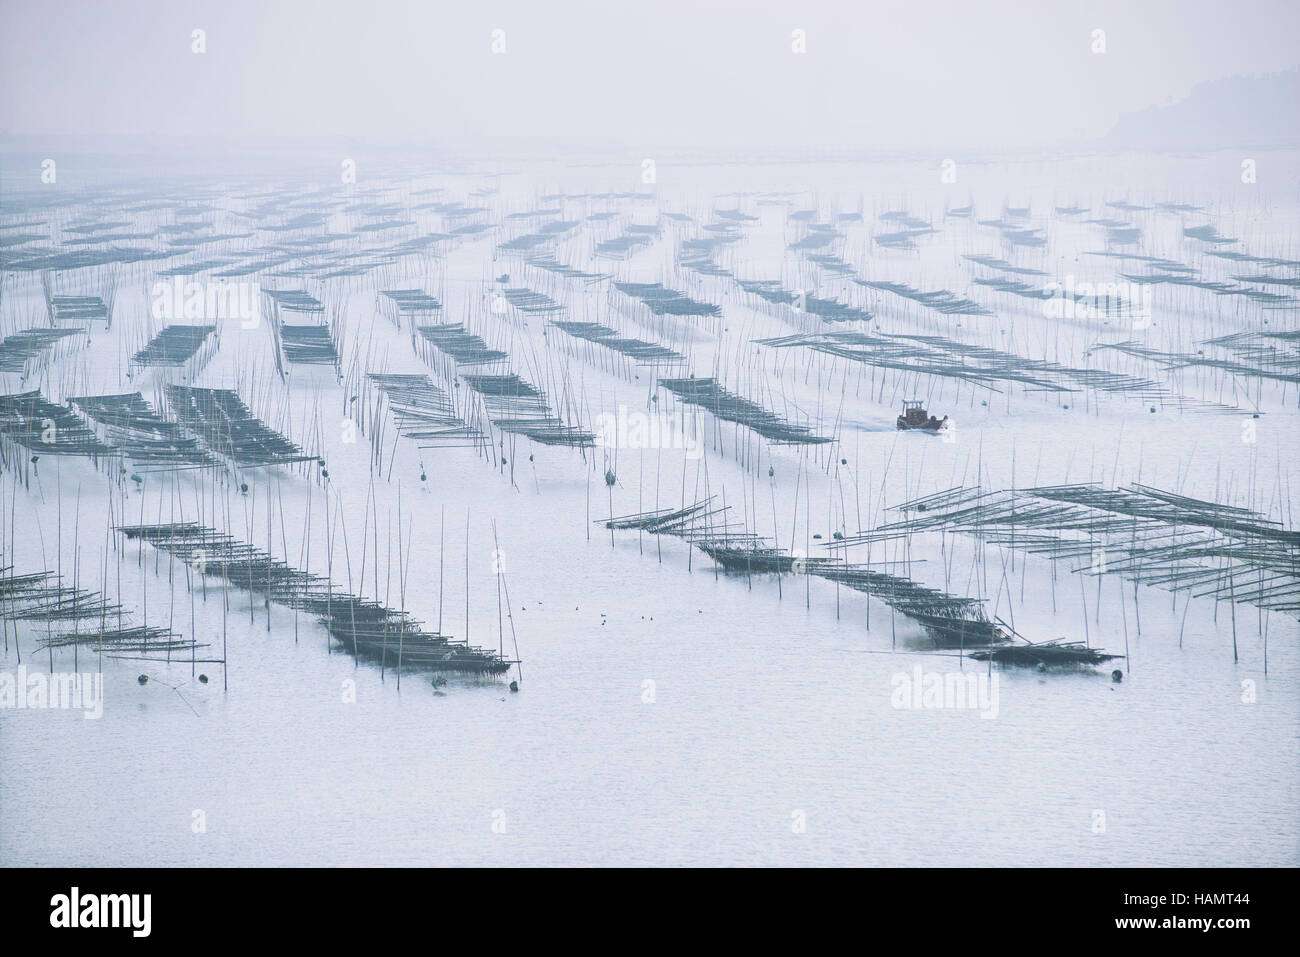 (161202)--WENLING, 2. Dezember 2016 (Xinhua)--Grubber ernten Algen von der Küste Wenling, Ost-China Zhejiang Provinz, 1. Dezember 2016. (Xinhua/Dai Funian) (Ry) Stockfoto